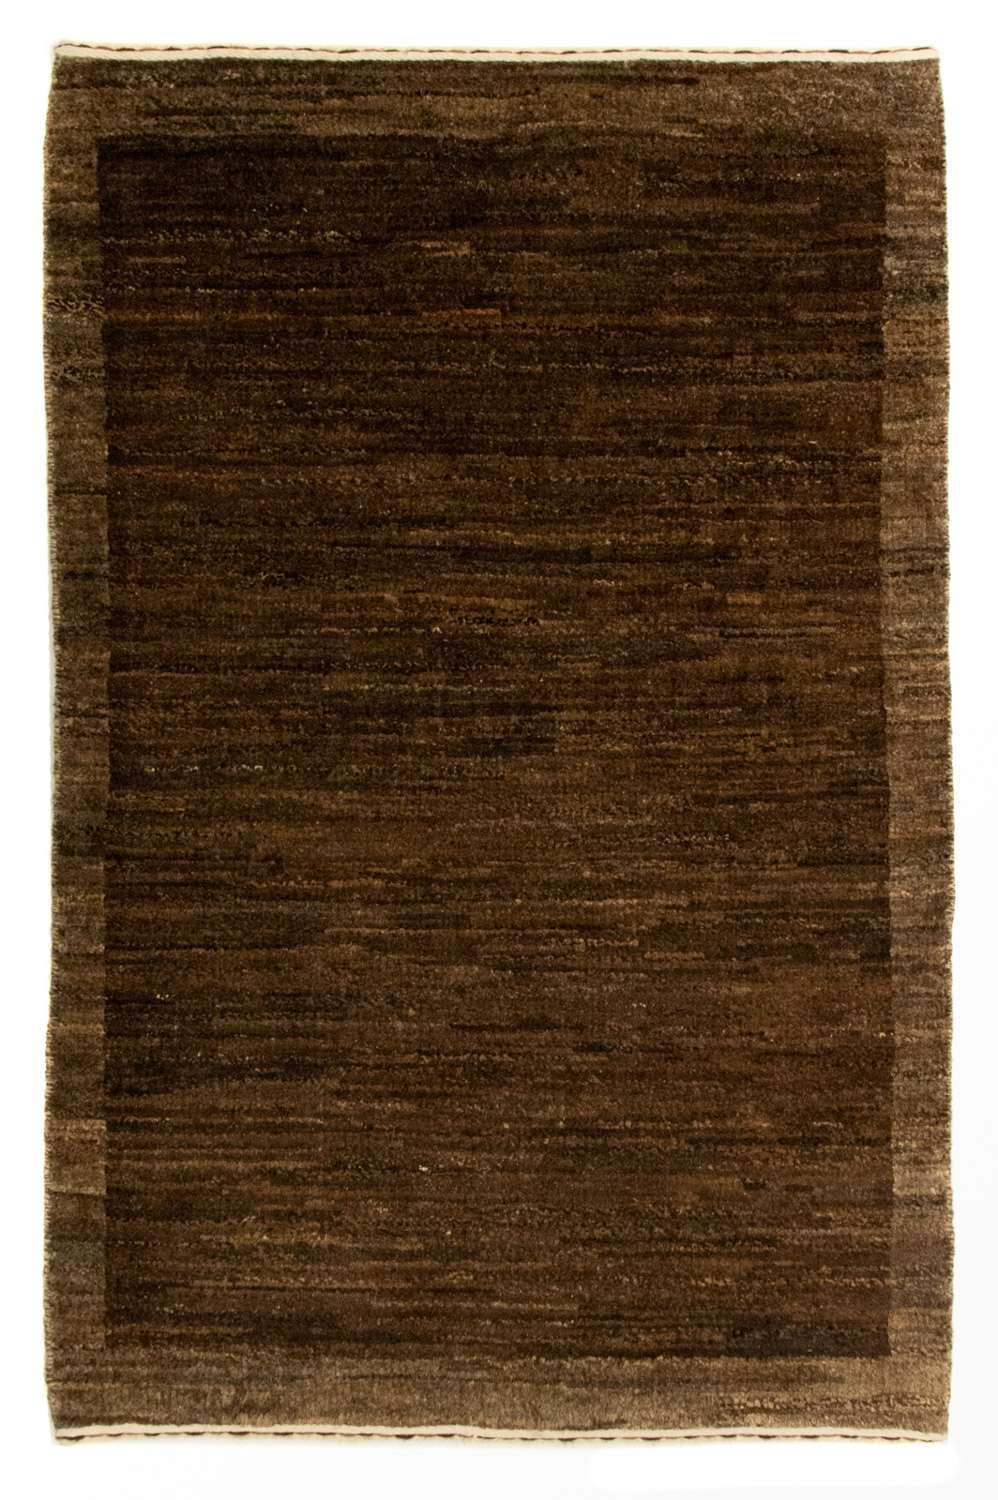 Gabbeh Rug - Indus - 93 x 60 cm - dark brown